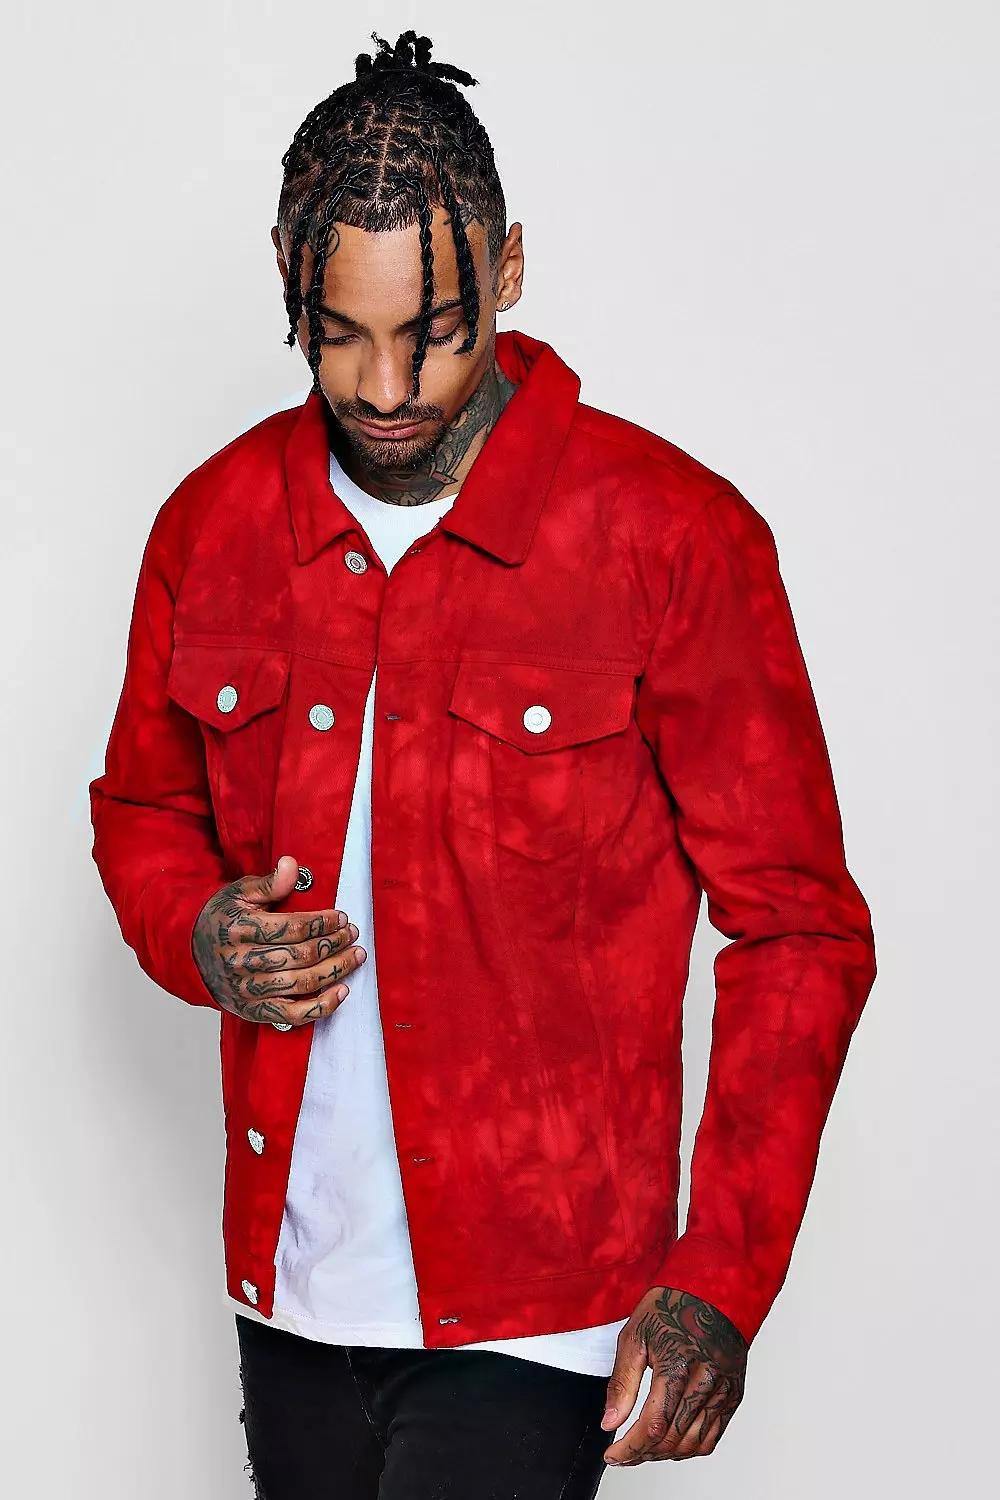 Red Denim Jacket (Trendencies)  Red denim jacket, Red jacket